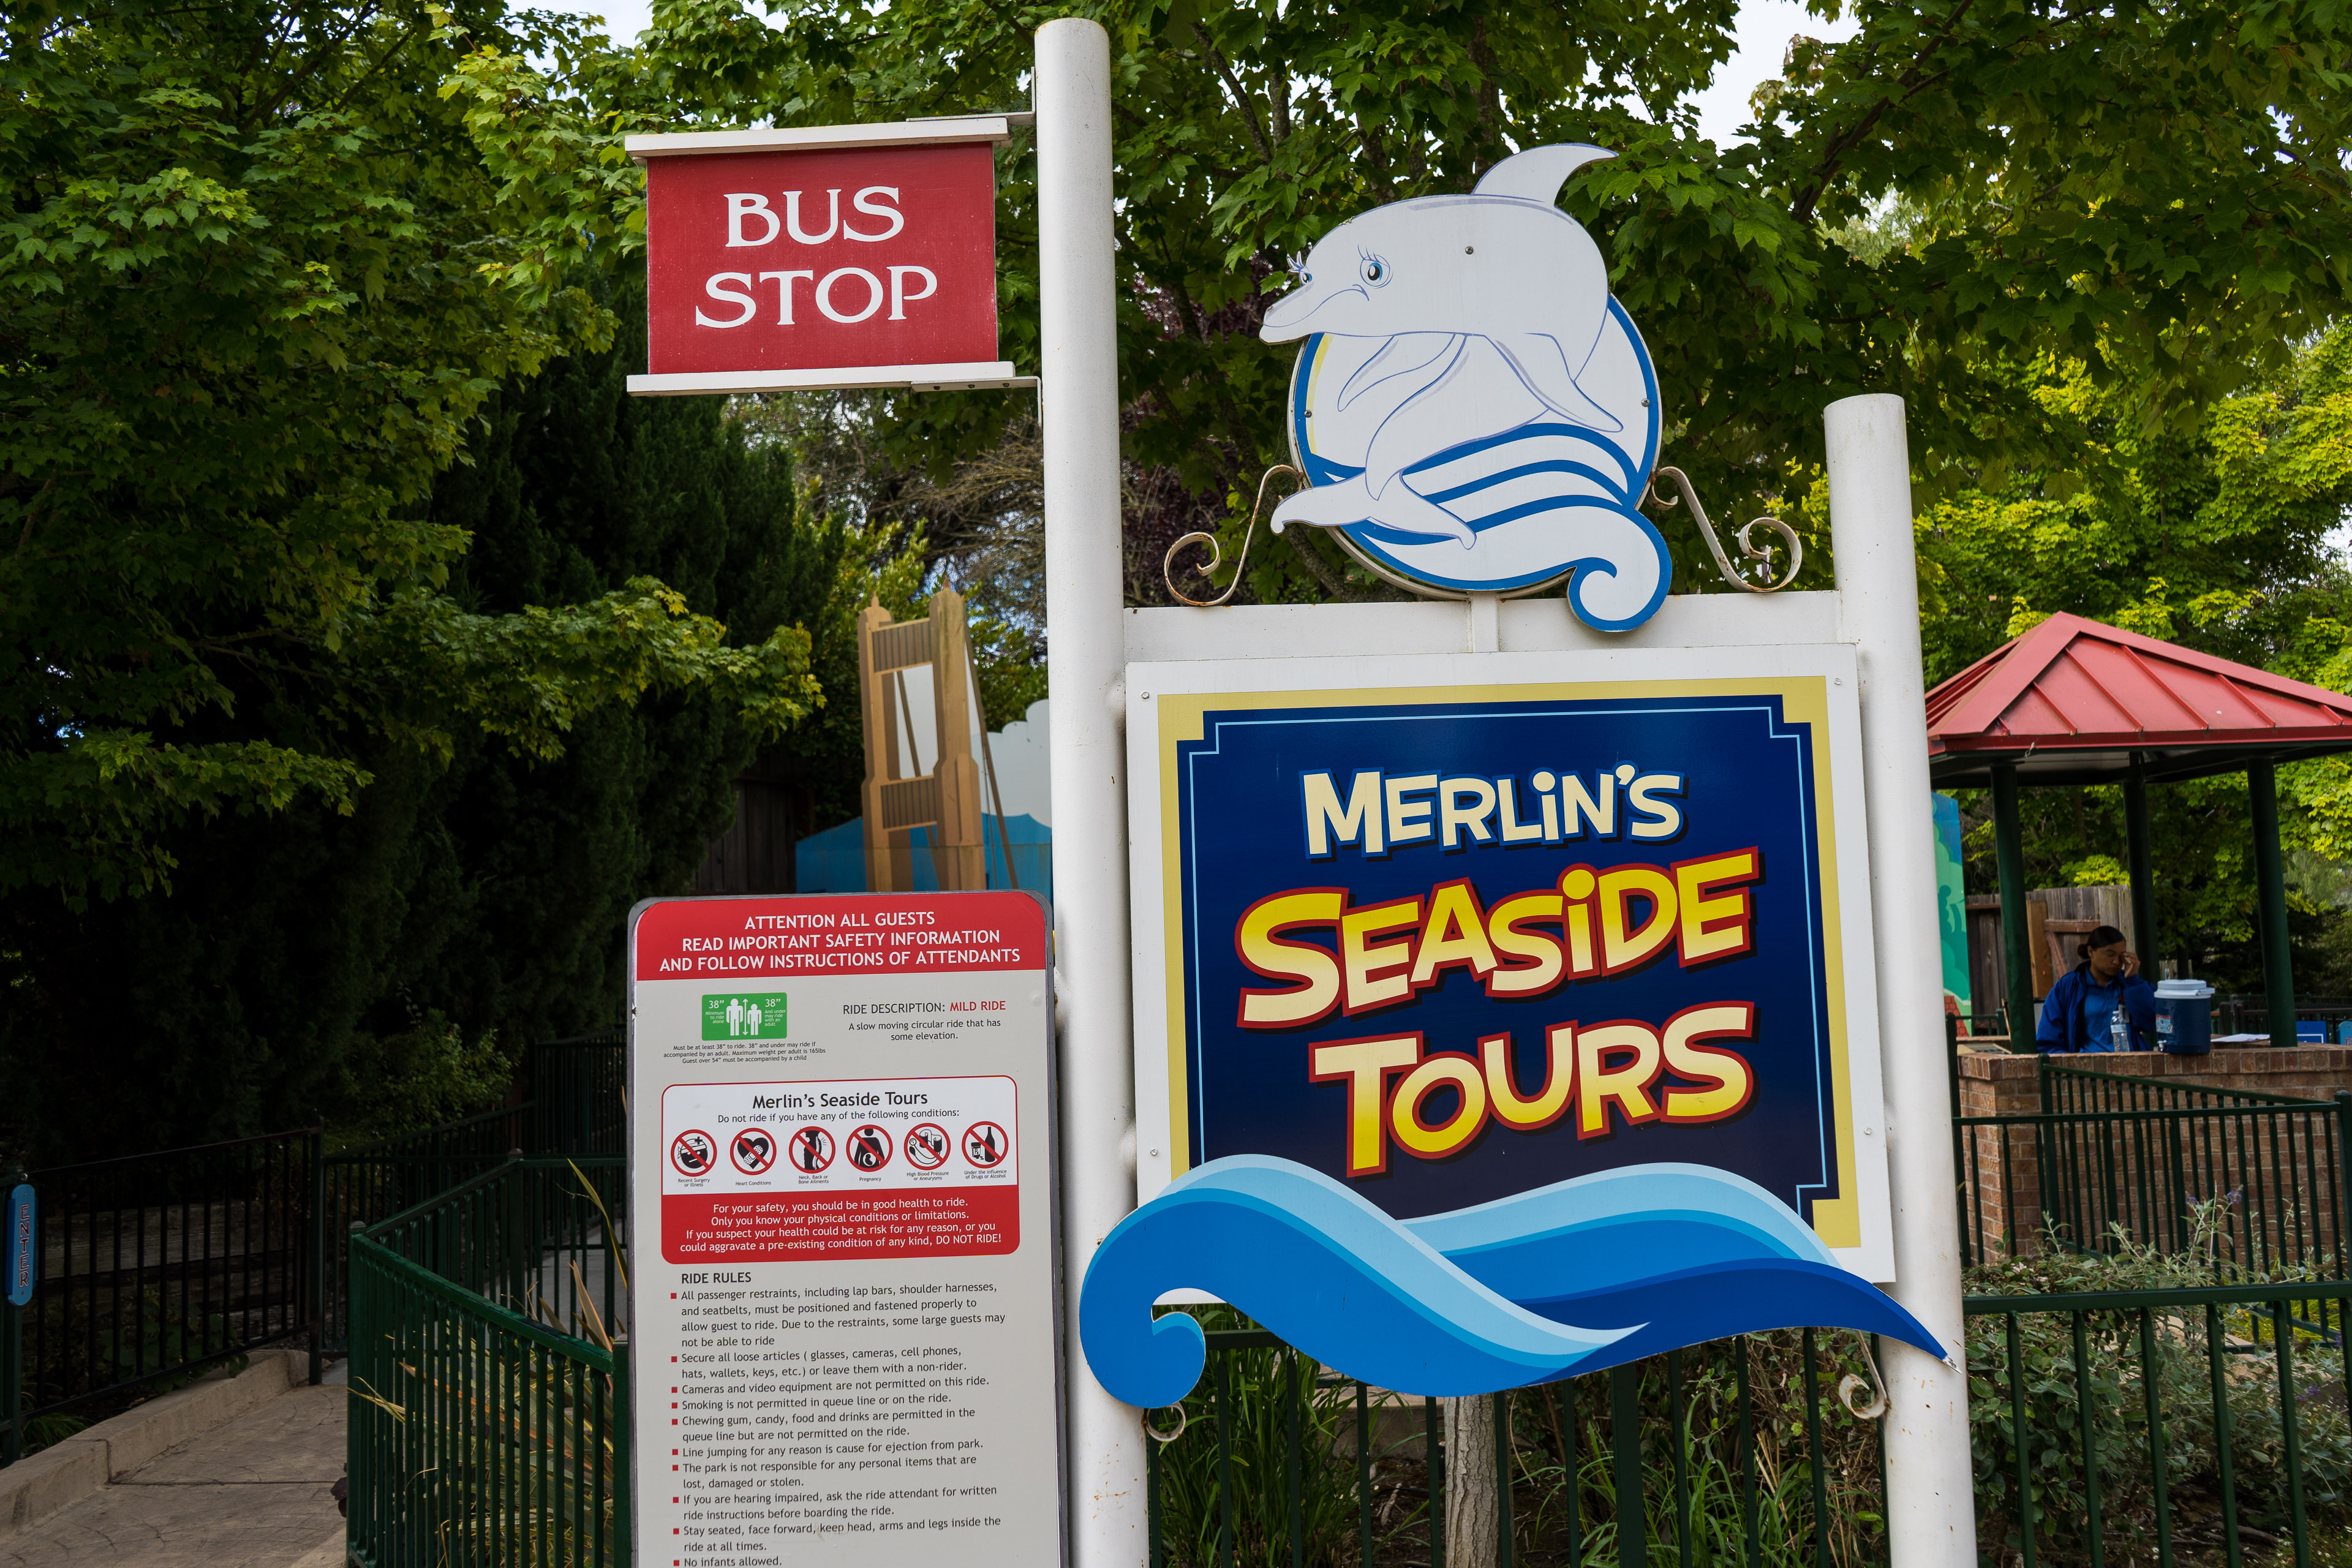 Merlin's Seaside Tours